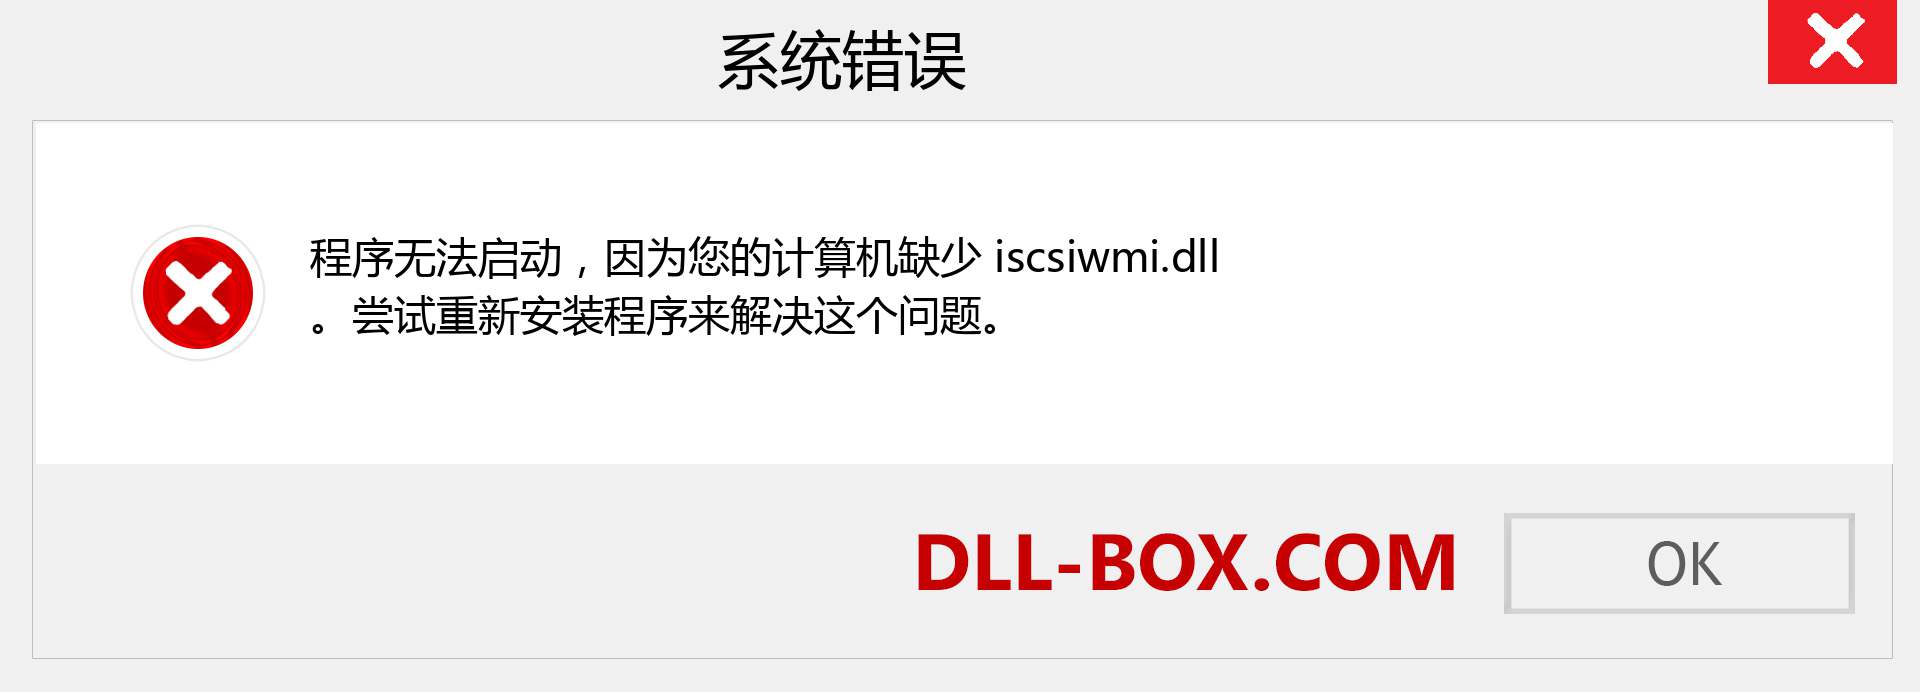 iscsiwmi.dll 文件丢失？。 适用于 Windows 7、8、10 的下载 - 修复 Windows、照片、图像上的 iscsiwmi dll 丢失错误